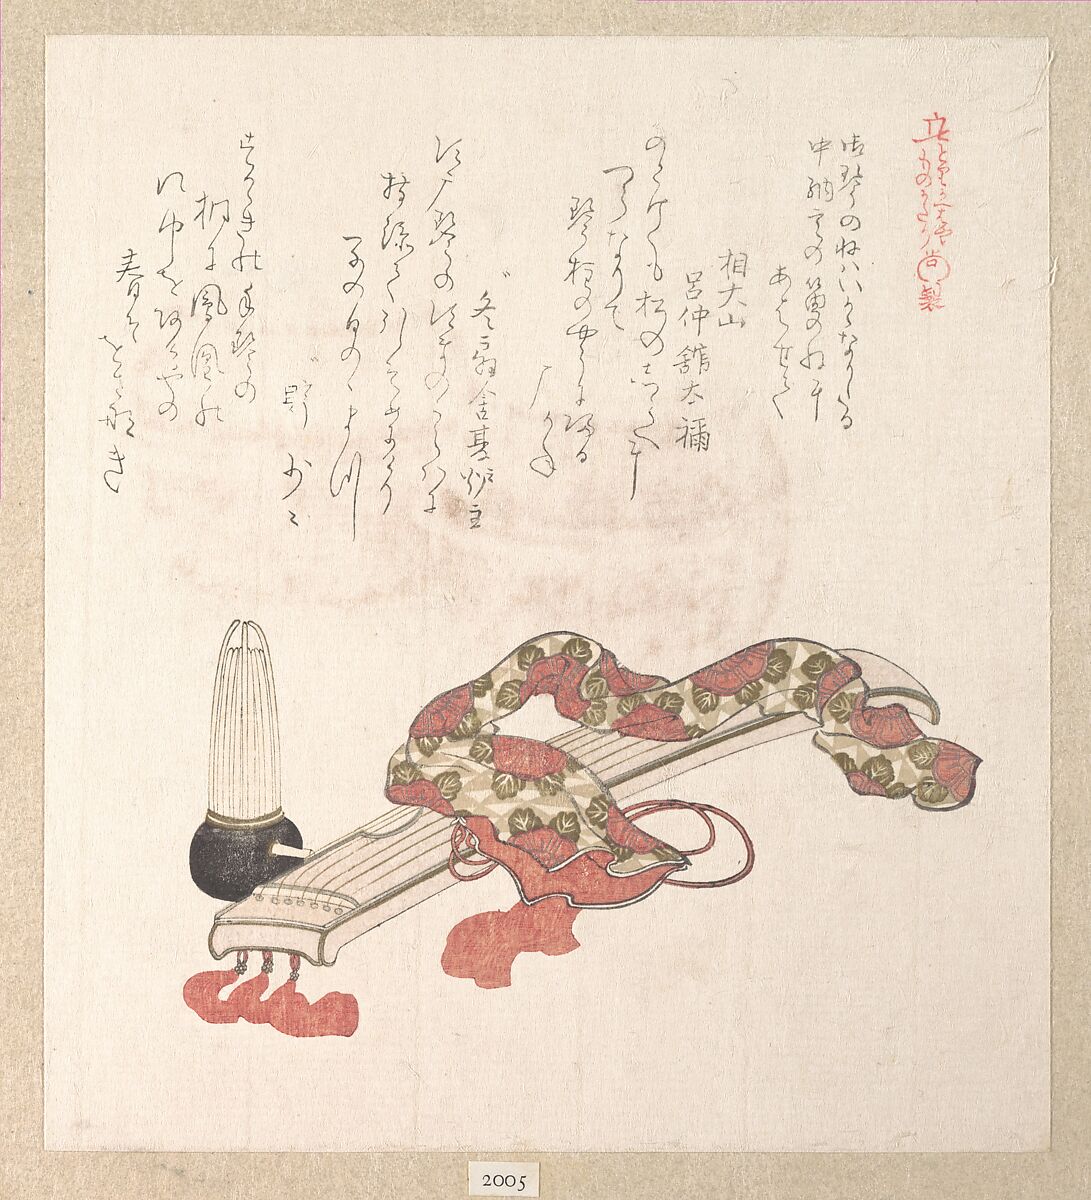 Koto (Japanese Harp) and Sho (Reed Organ), Kubo Shunman (Japanese, 1757–1820), Woodblock print (surimono); ink and color on paper, Japan 